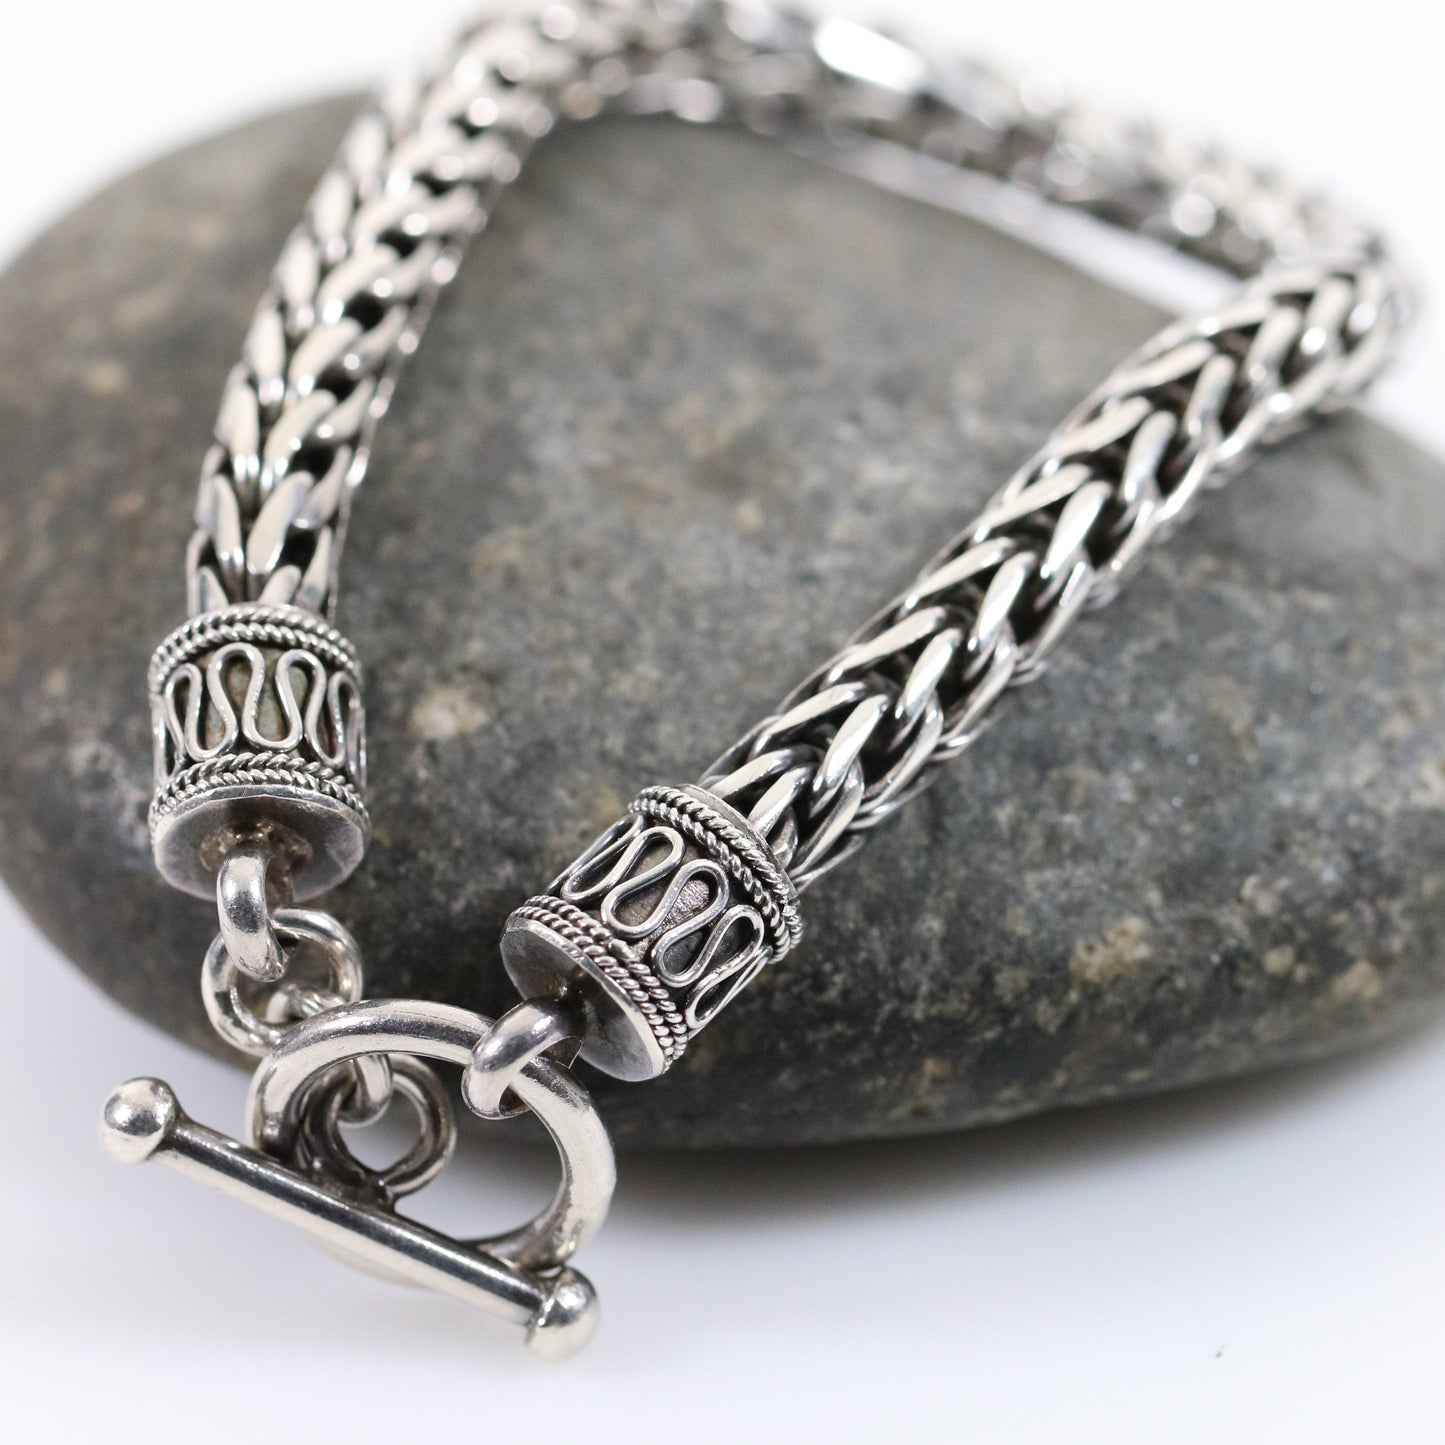 Vintage Silver Jewelry | Byzantine Style Wheat Chain Bracelet - Carmel Fine Silver Jewelry